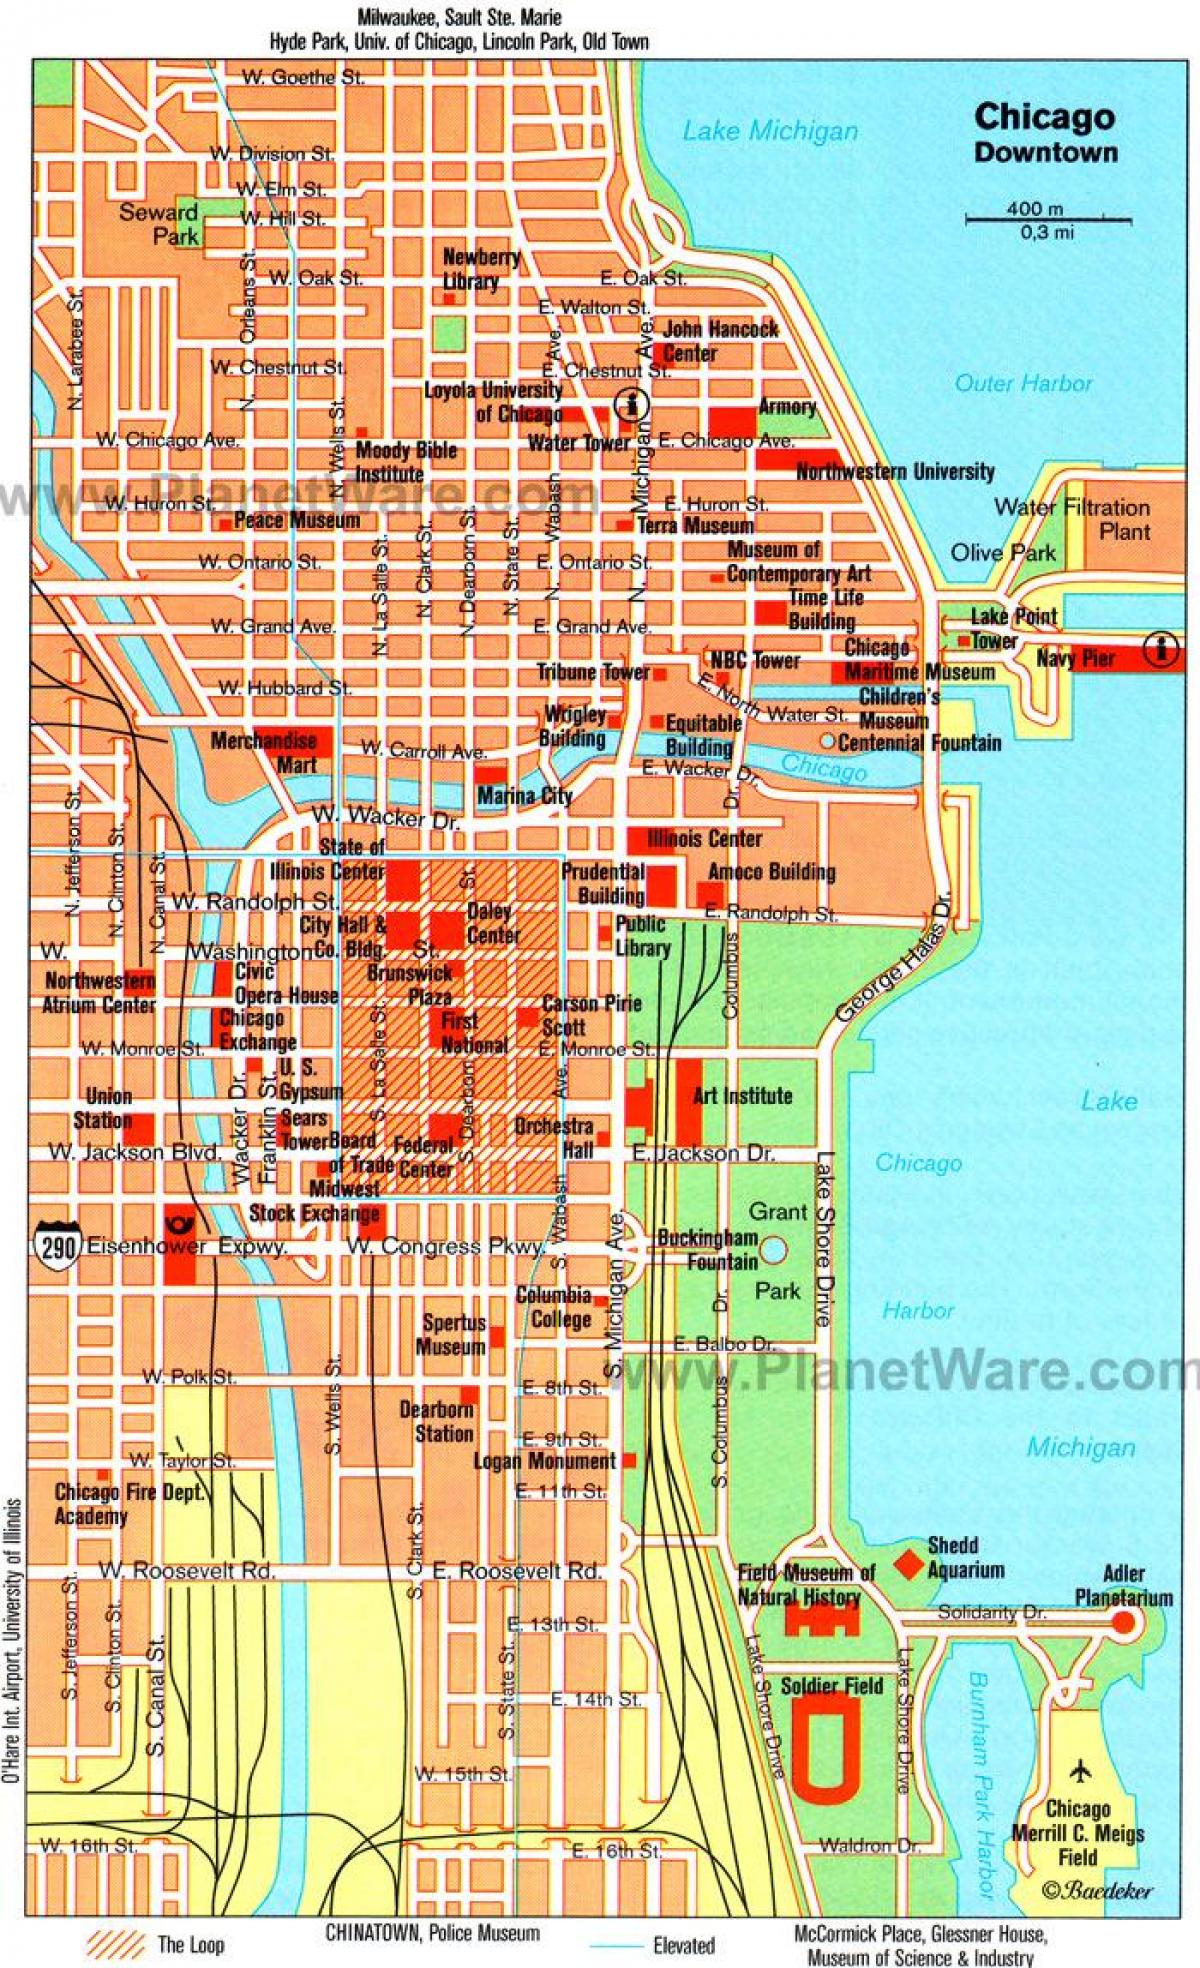 kort over museer i Chicago